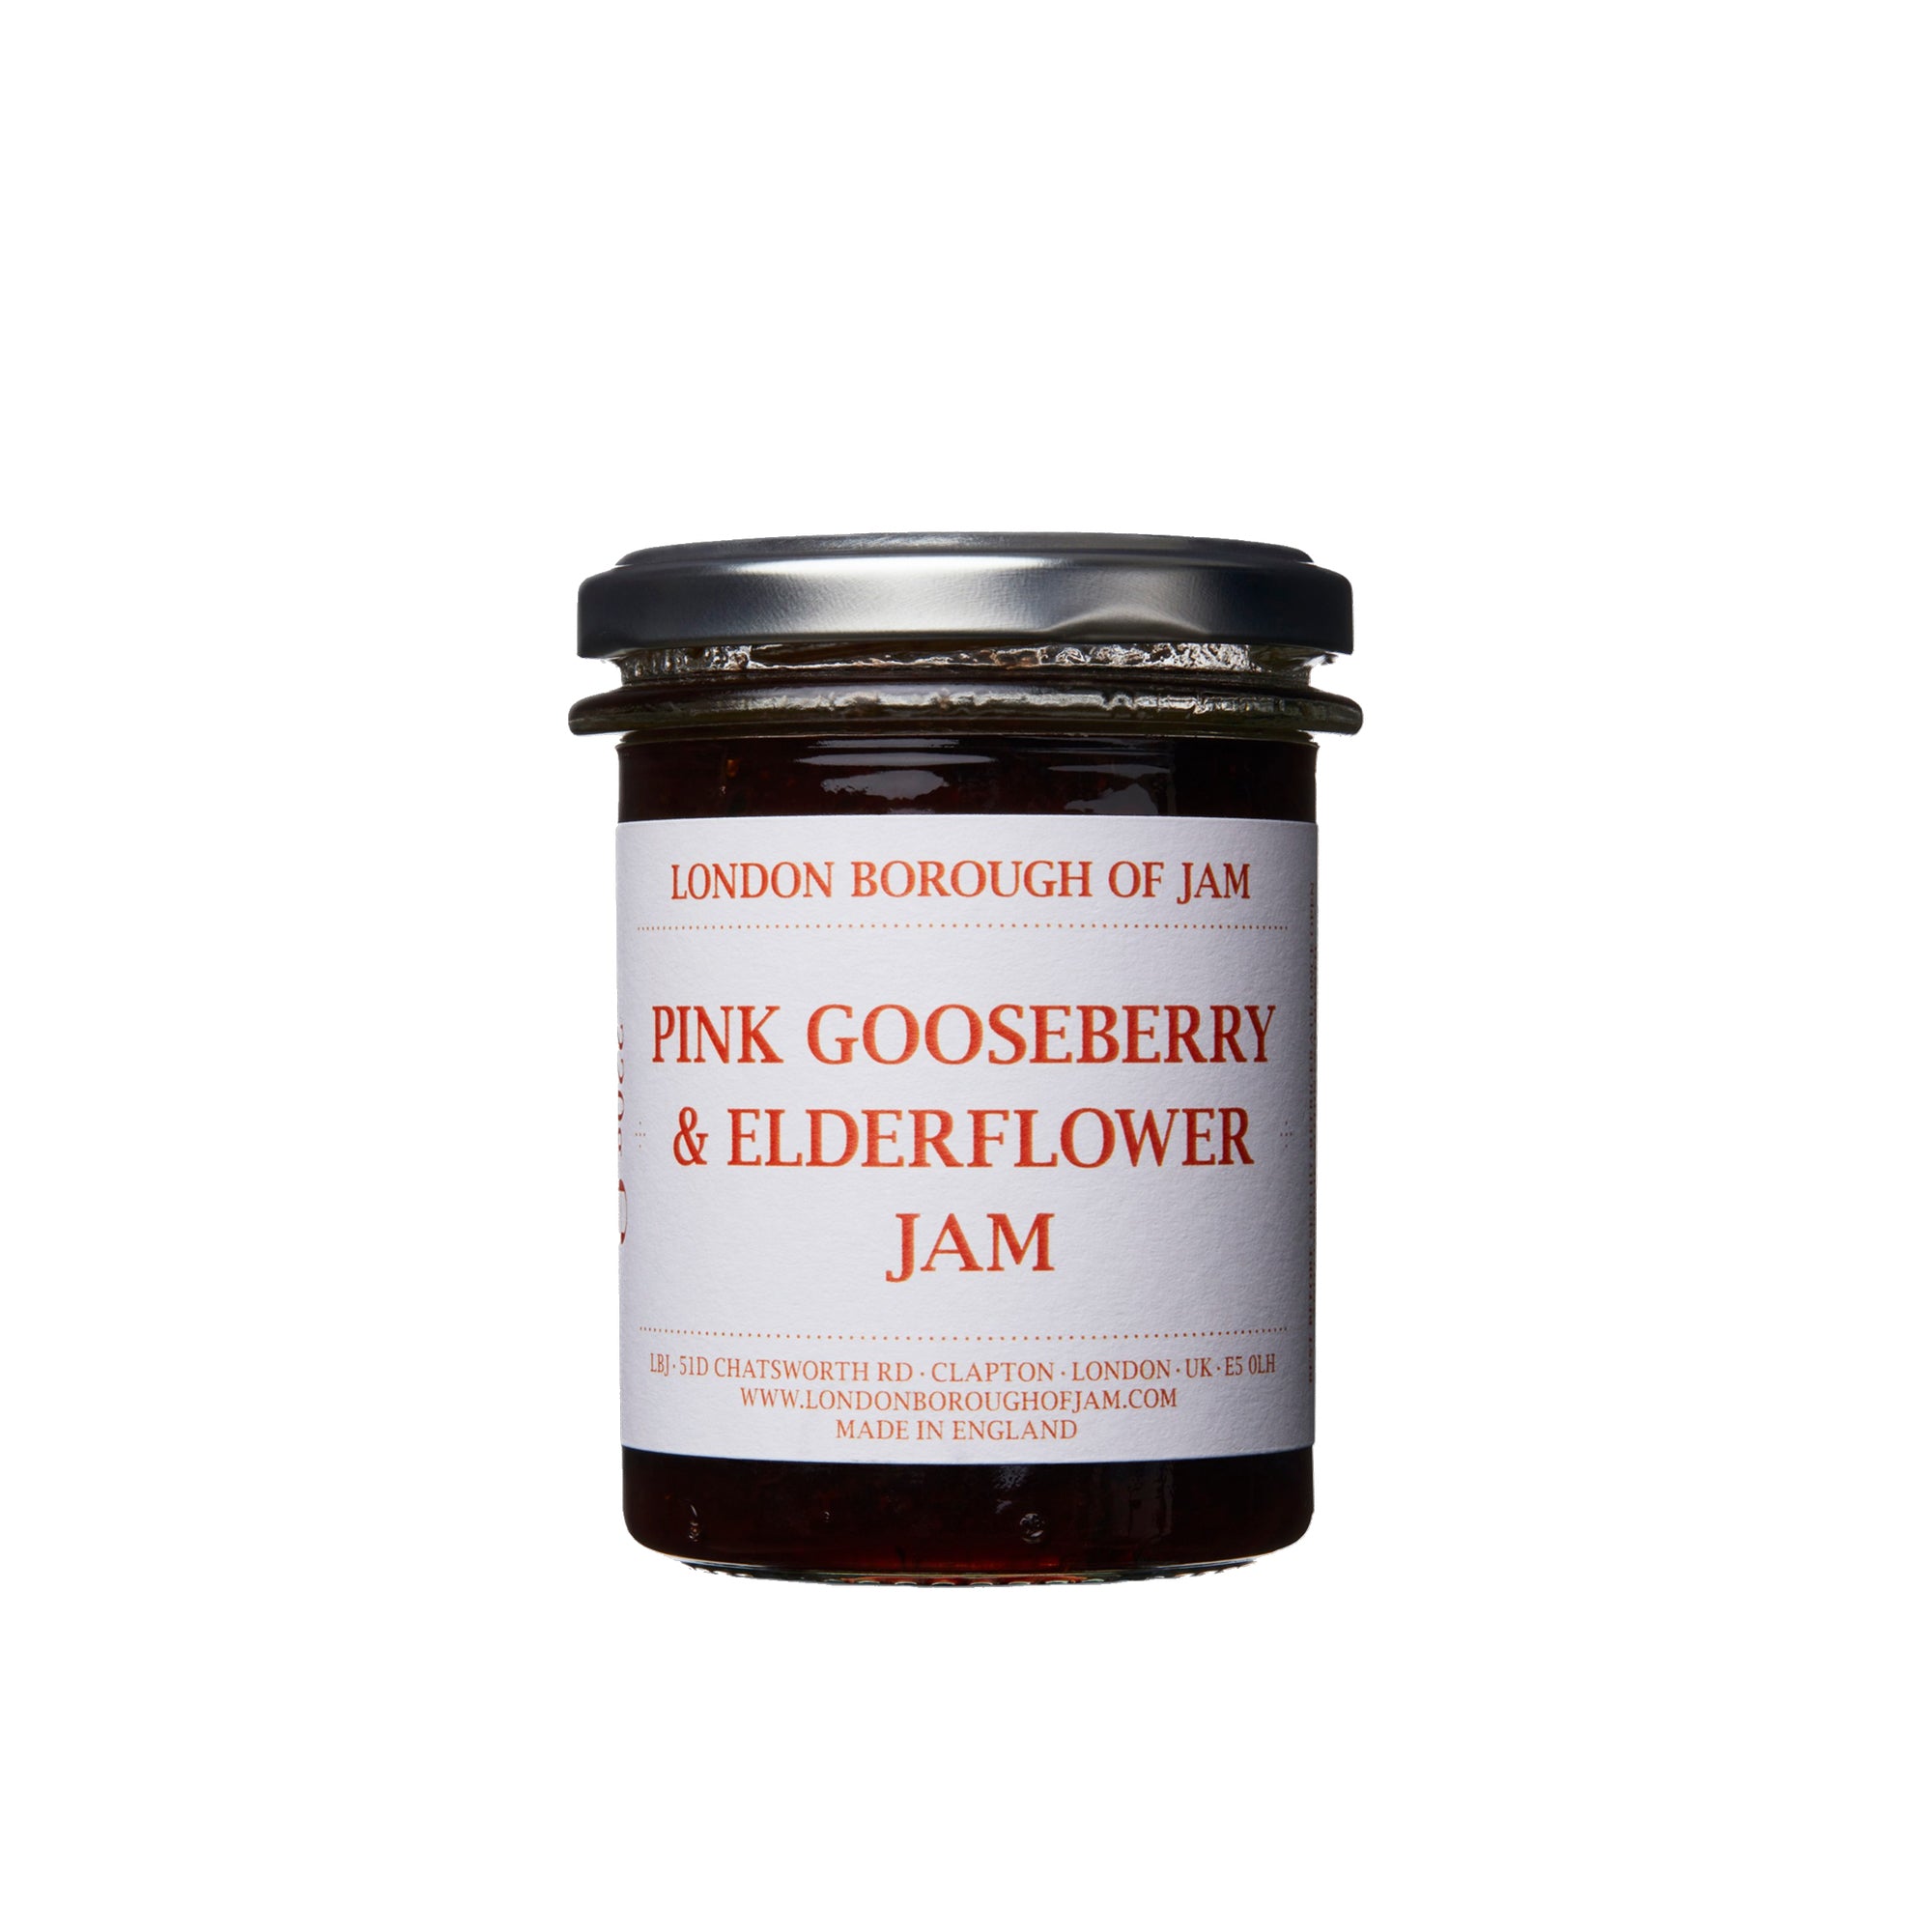 Pink Gooseberry & Elderflower Jam